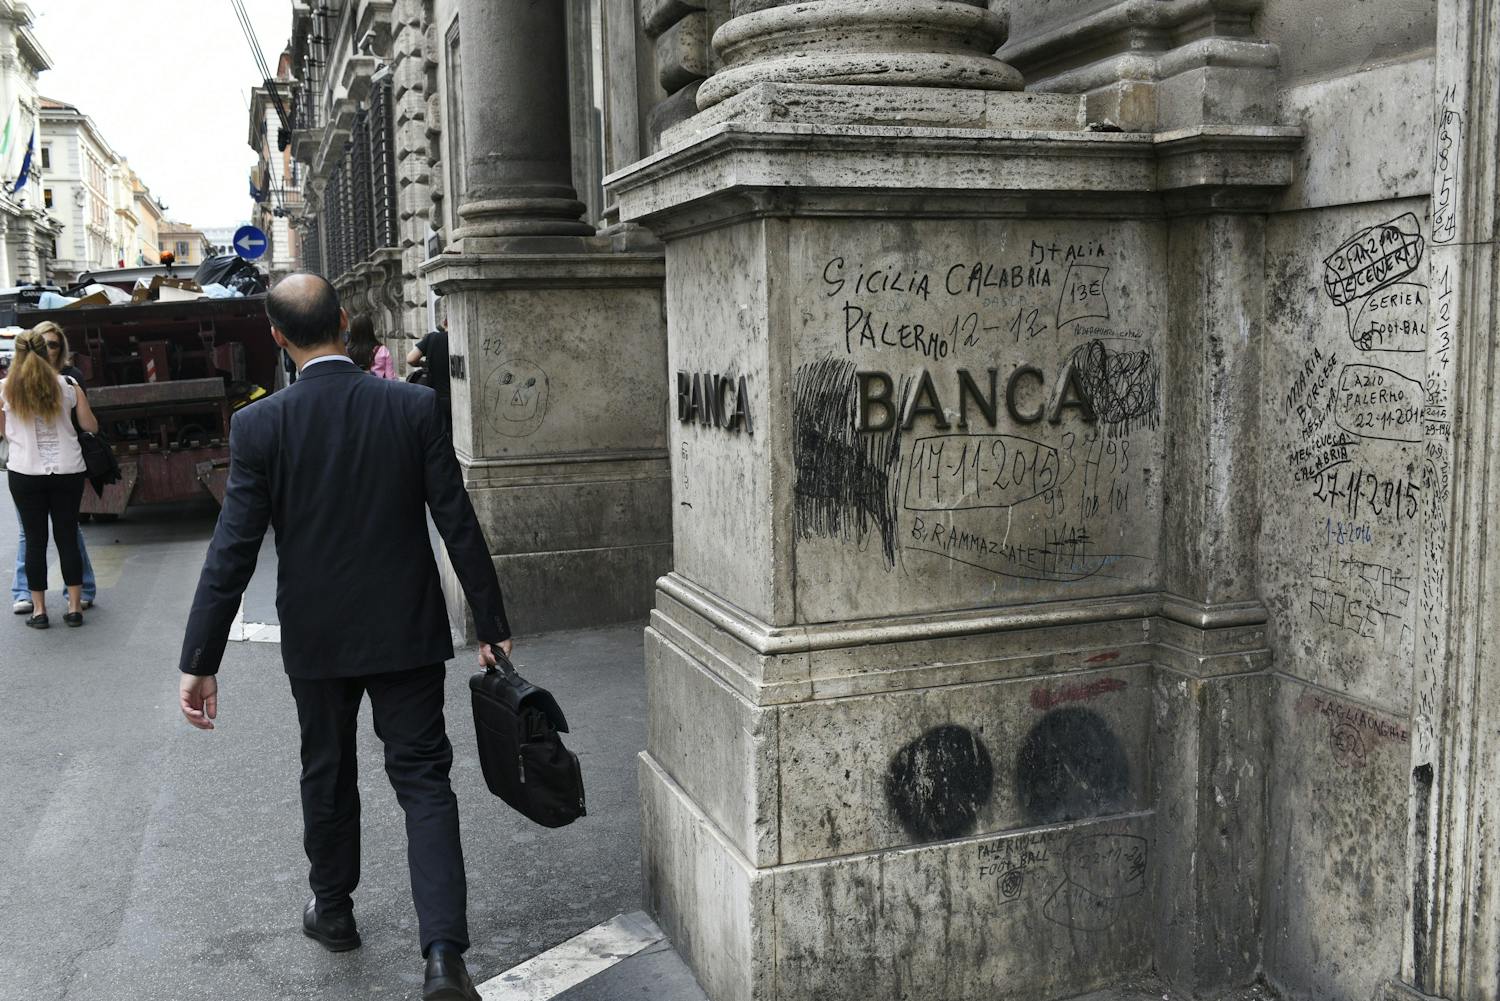 Il “fiasco epico” La riduzione delle tasse bancarie mette in luce il conflitto politico interno dell’Italia